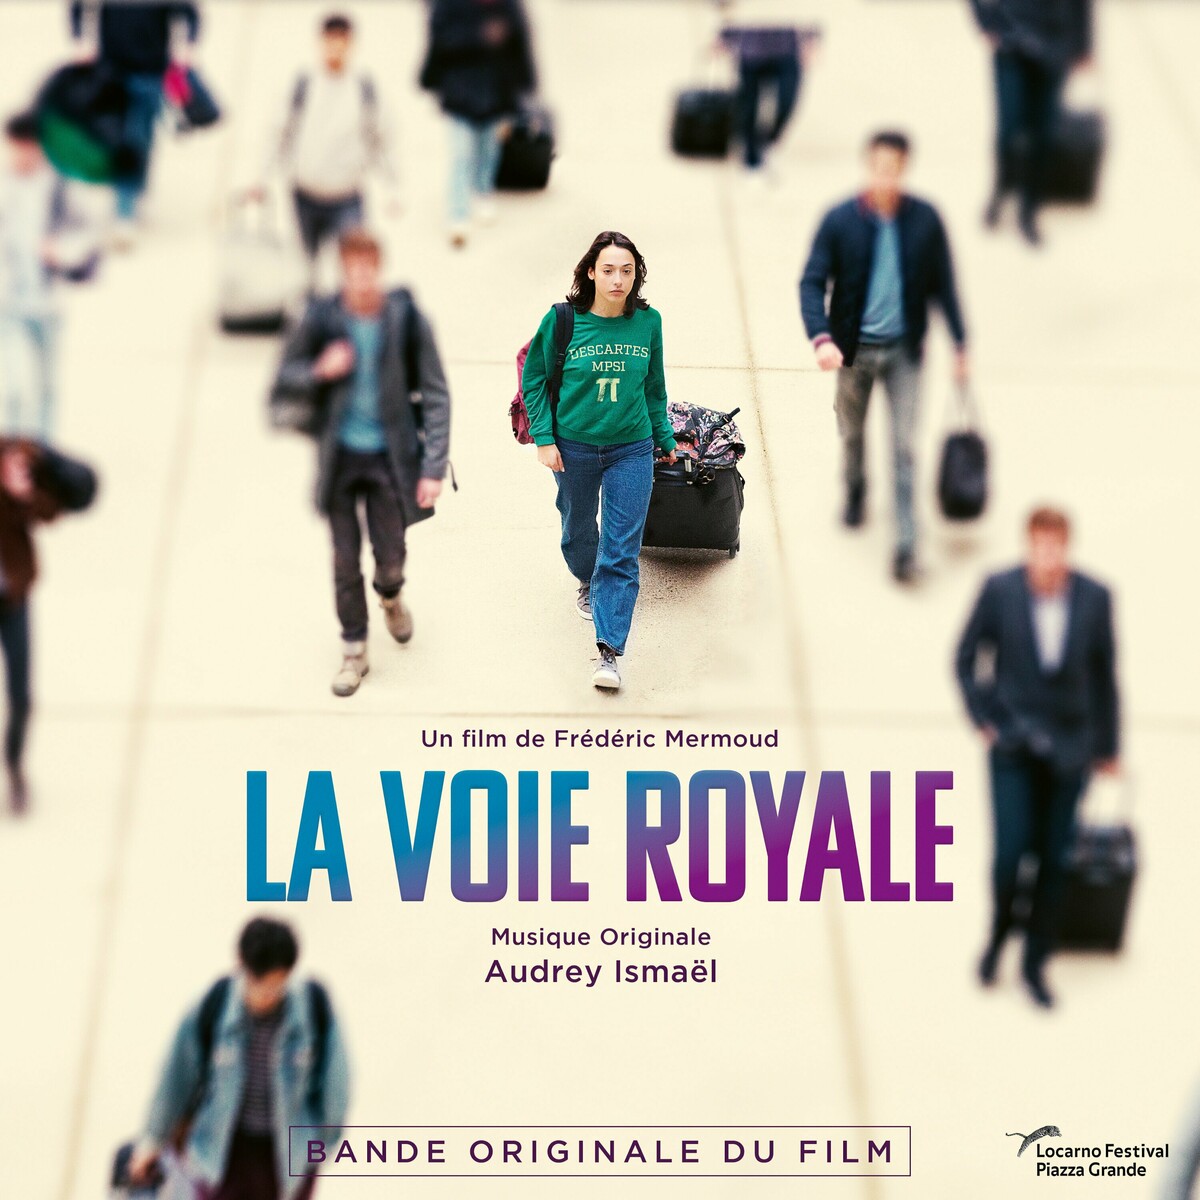 La voie royale Soundtrack (by Audrey Ismael) -- Seeders: 1 -- Leechers: 0